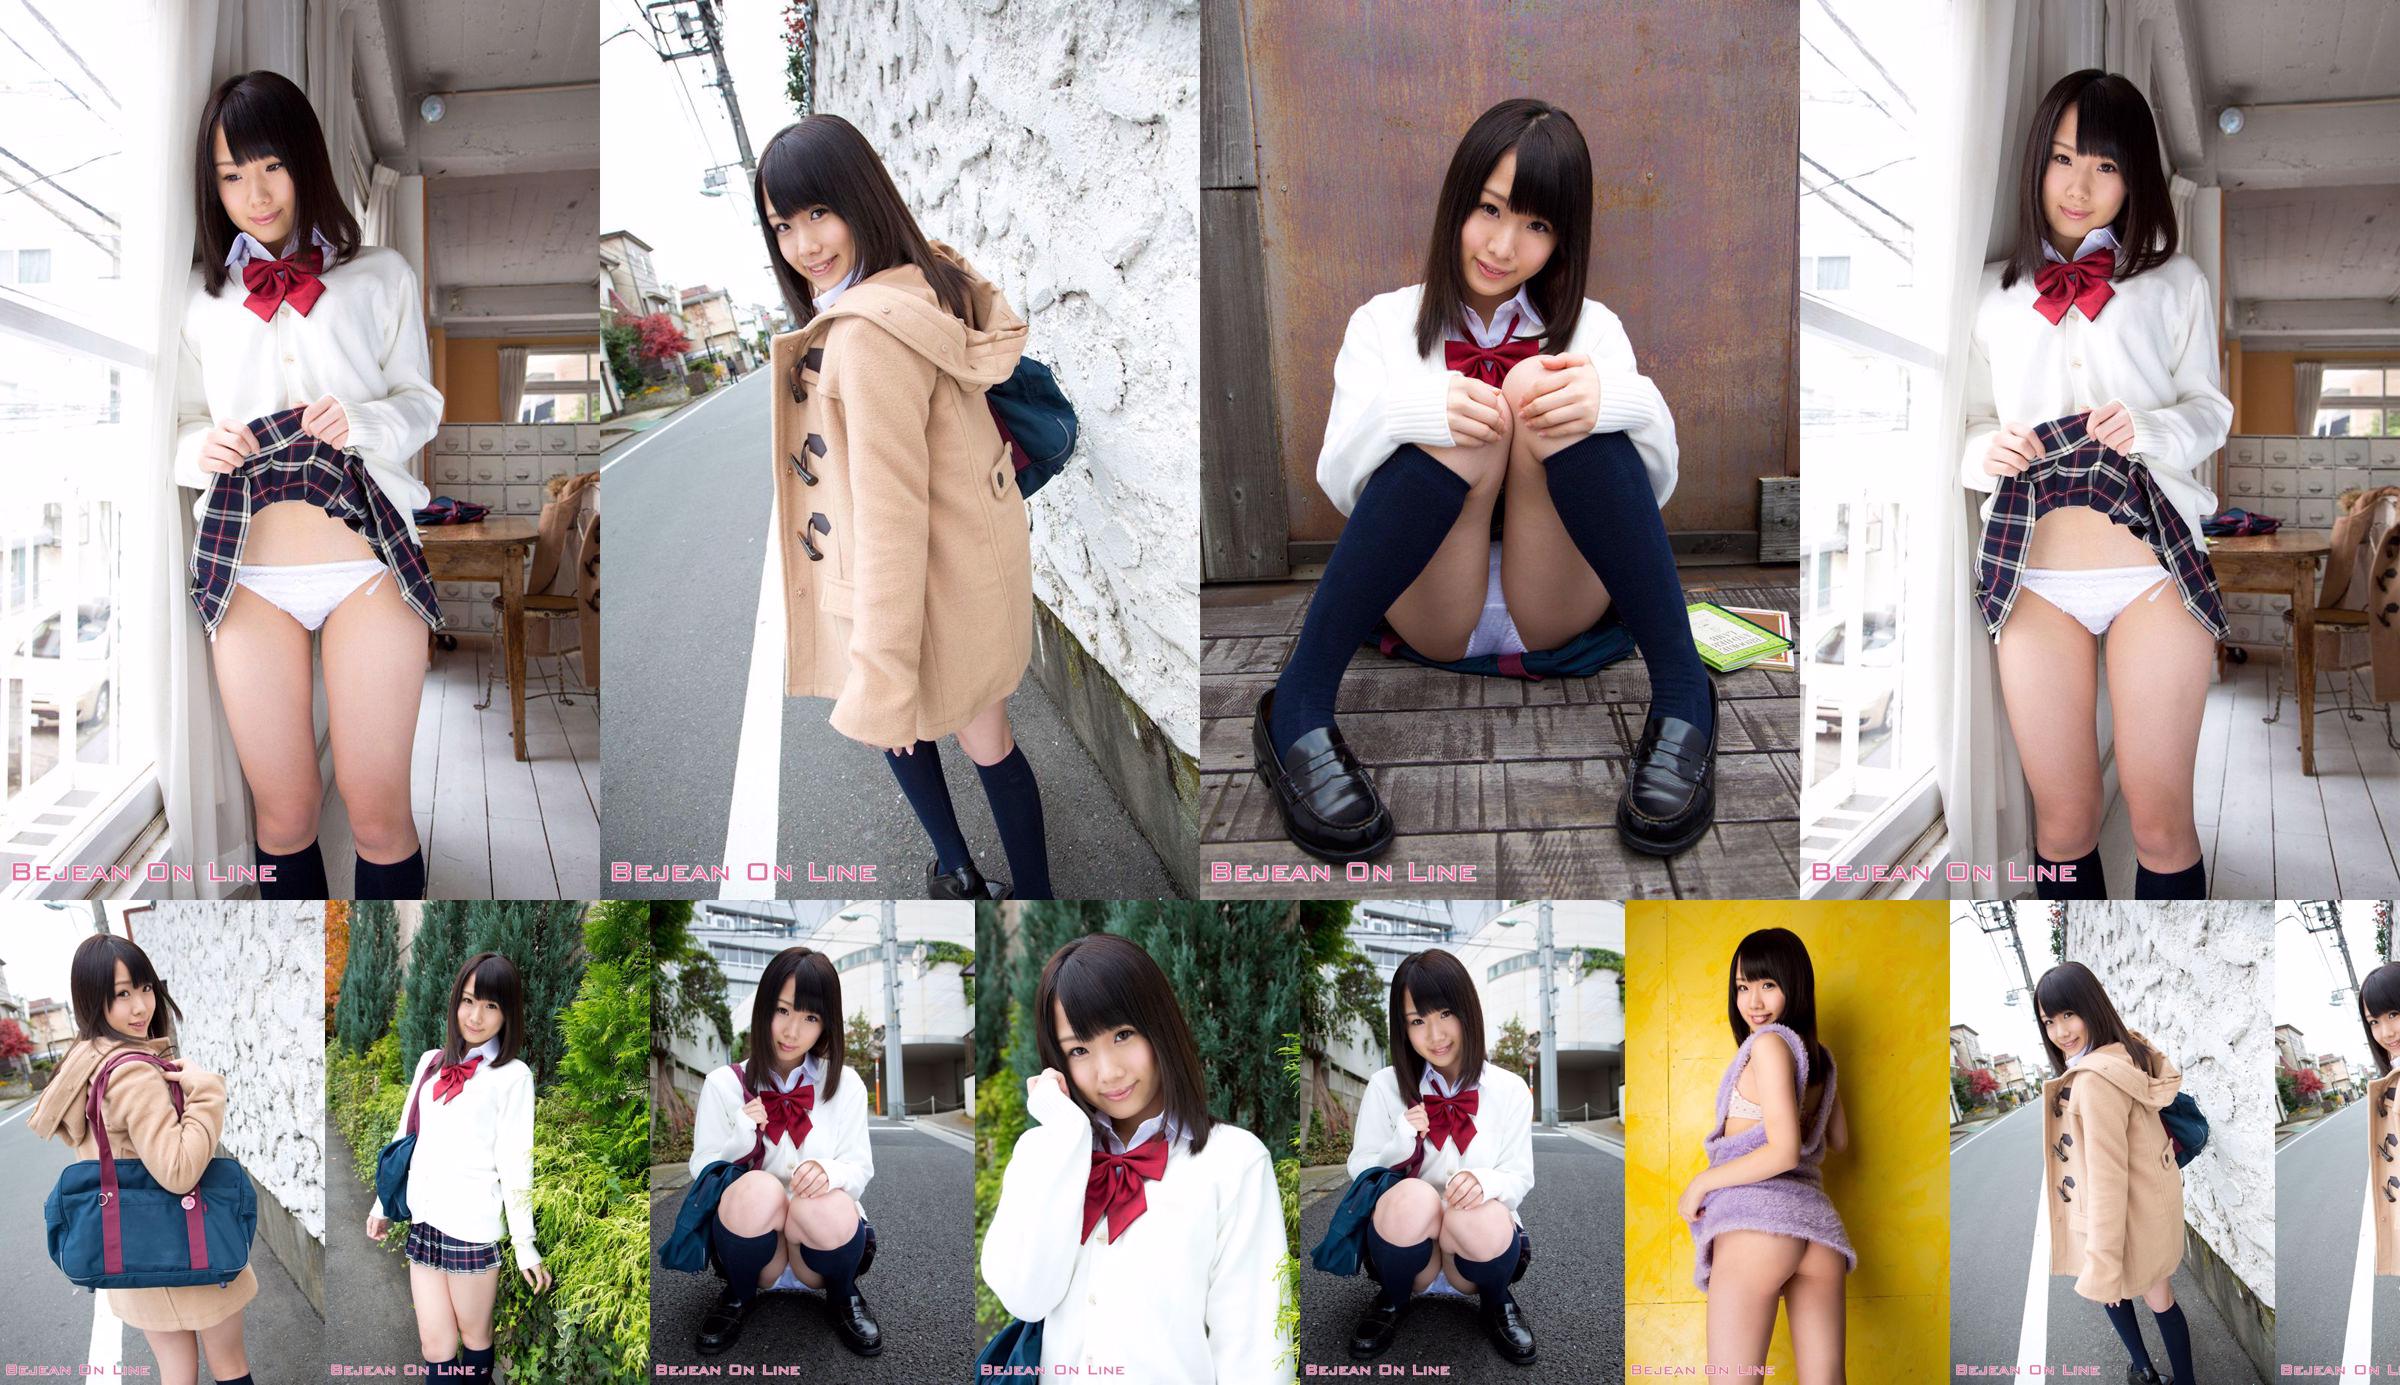 第一照片美女Ami Hyakutake Ami Hyakutake / Ami Hyakutake [Bejean On Line] No.ad7481 第6頁